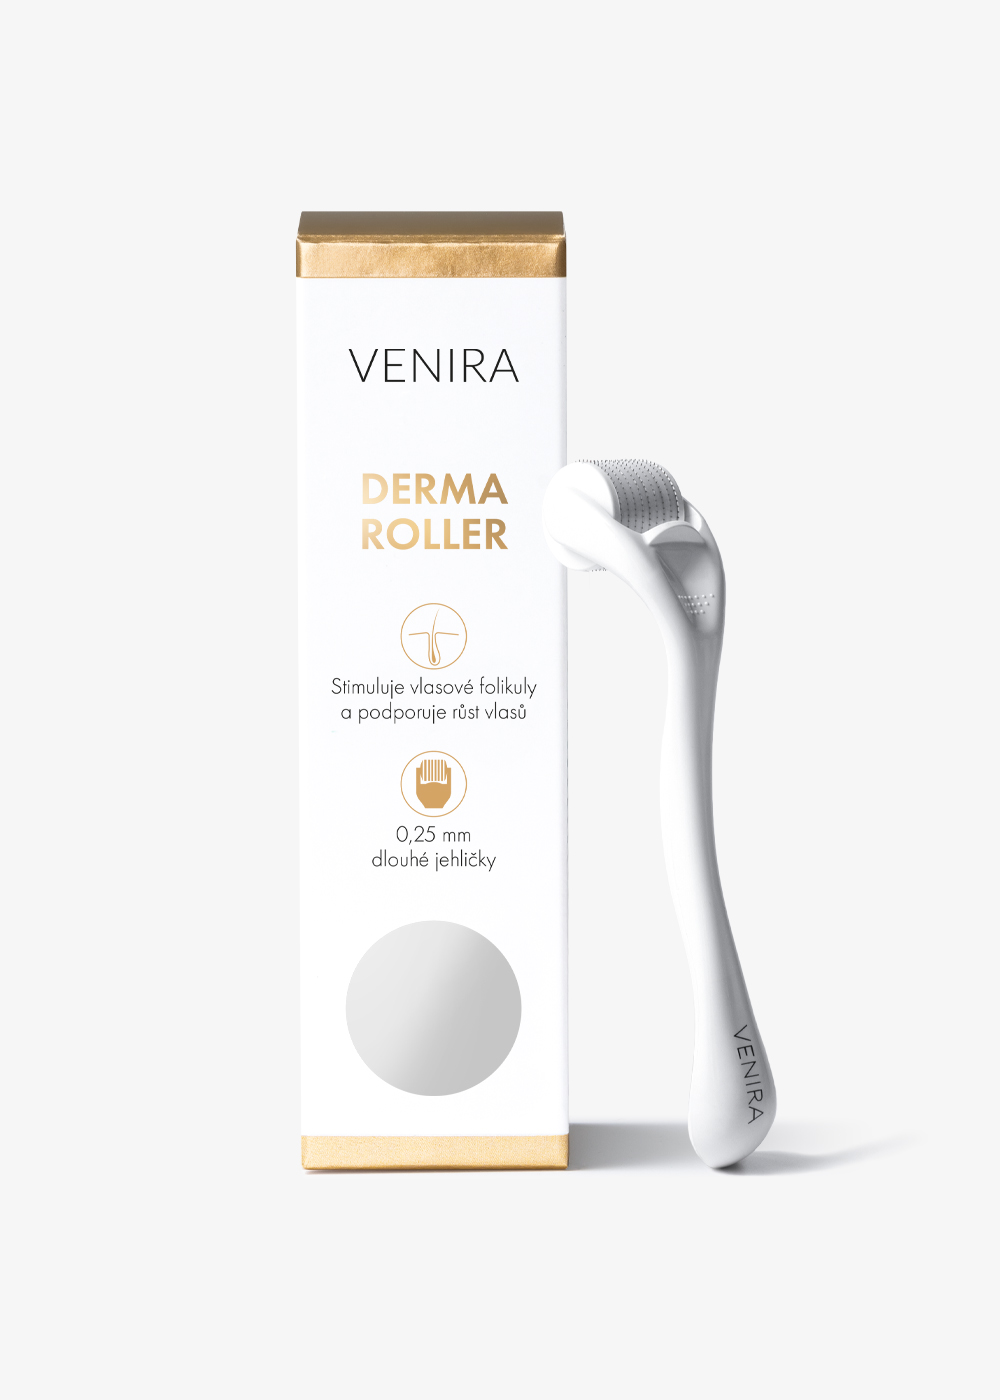 VENIRA derma roller na vlasy, mikrojehličkový aplikátor na vlasovú pokožku, 0,25 mm mikrojehličkový aplikátor na vlasovú pokožku, 0,25 mm